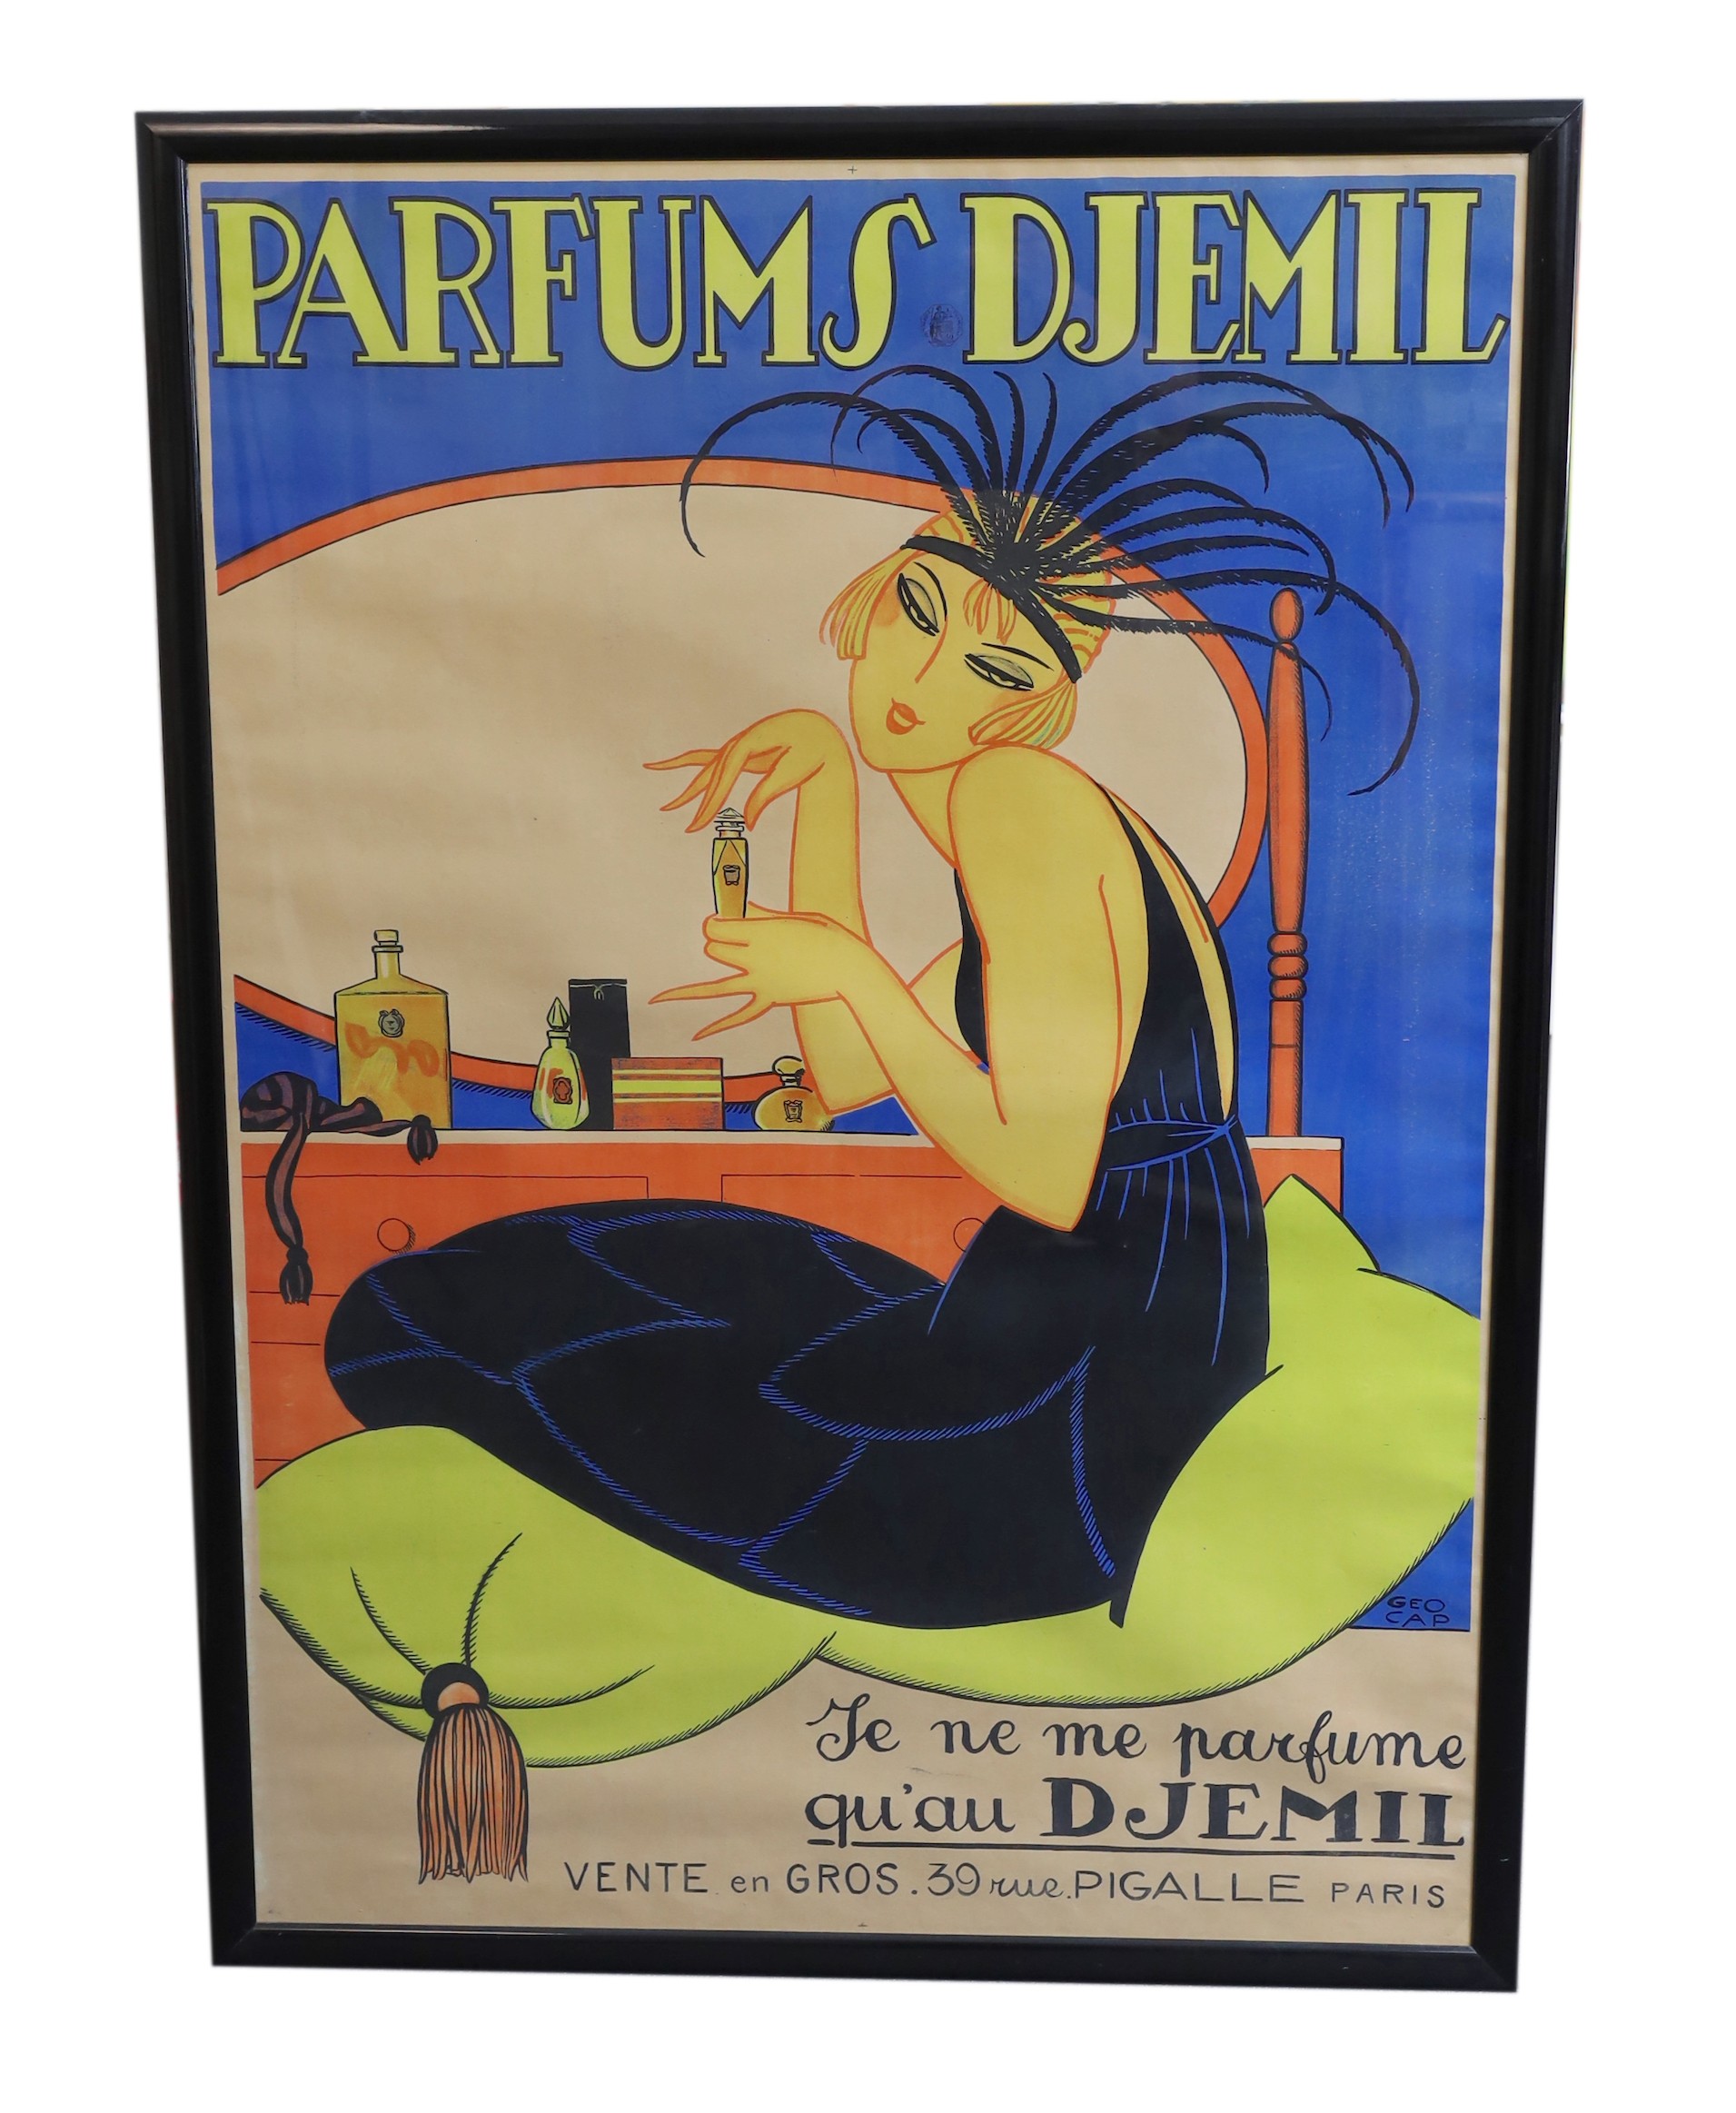 Georges Cap. A Parfums Djemil poster 134 x 93.5cm.